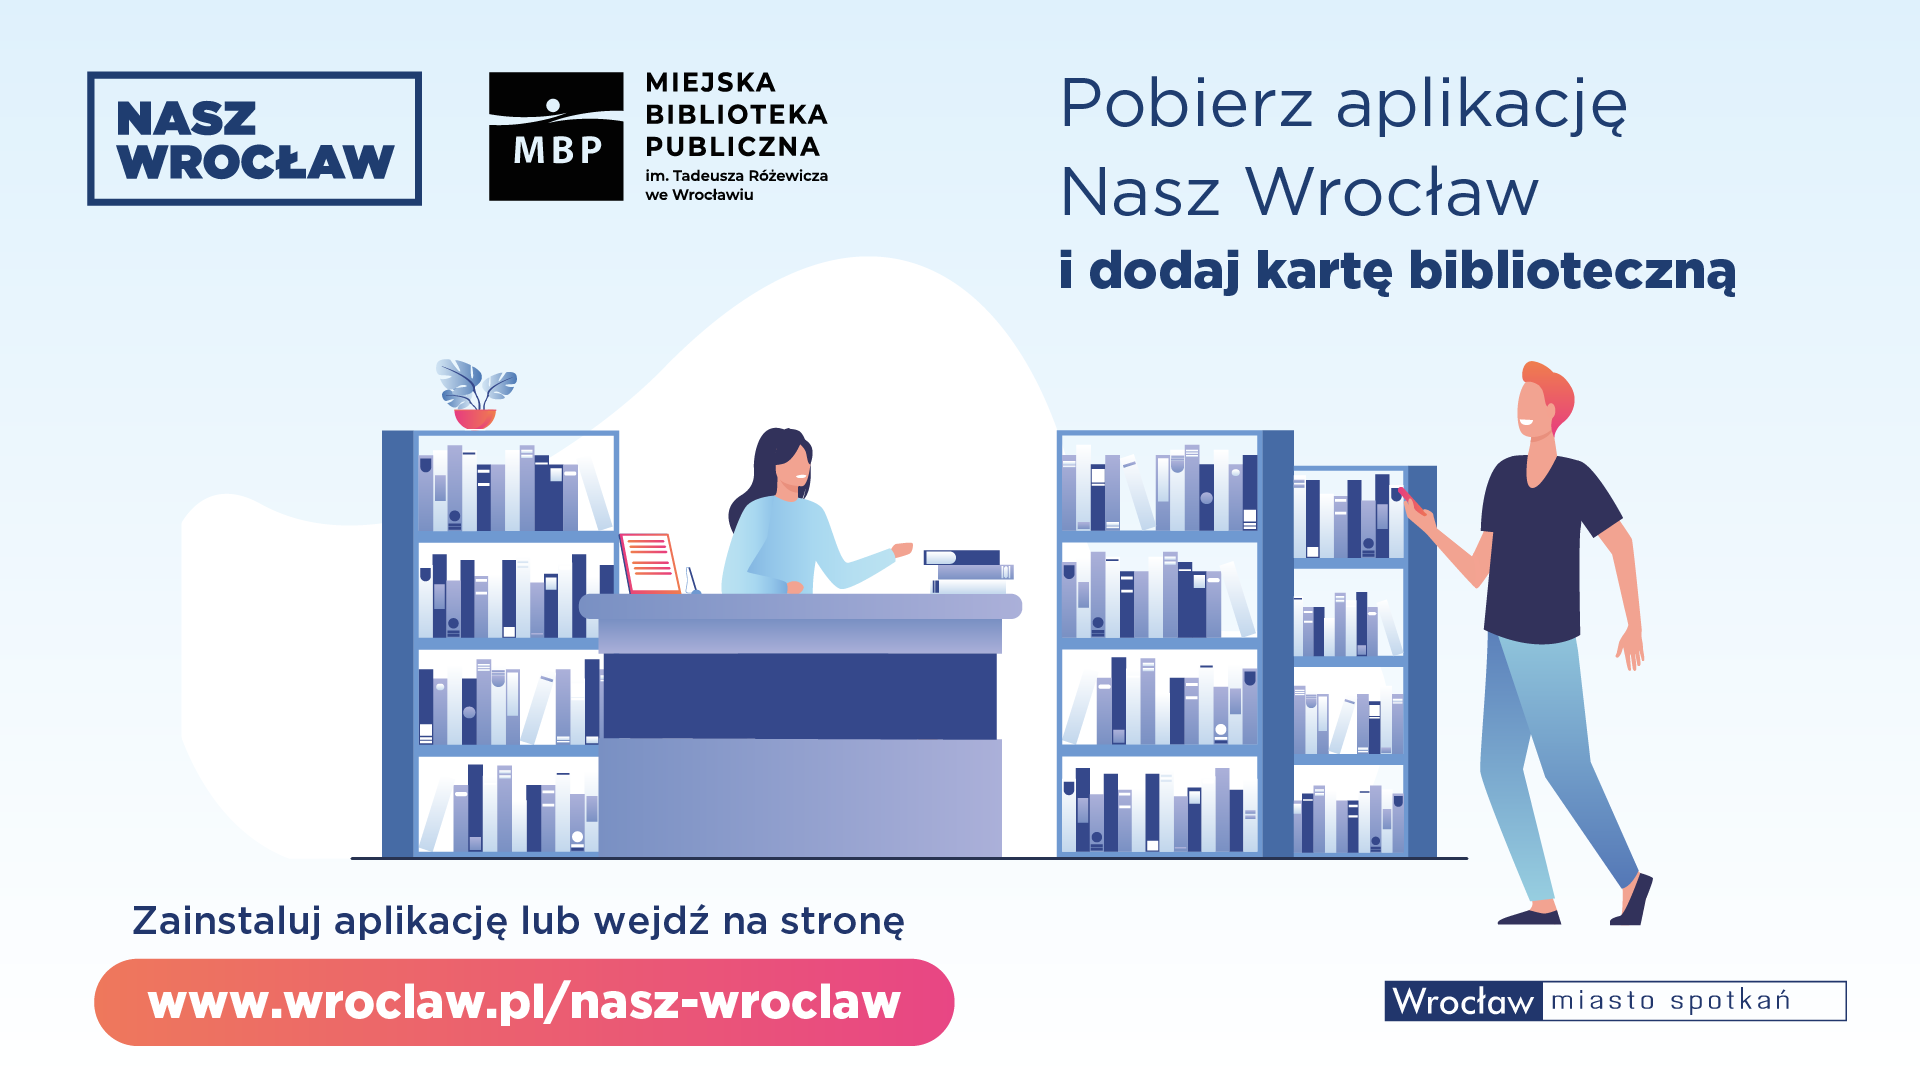 Wirtualna karta biblioteczna w aplikacji Nasz Wrocław